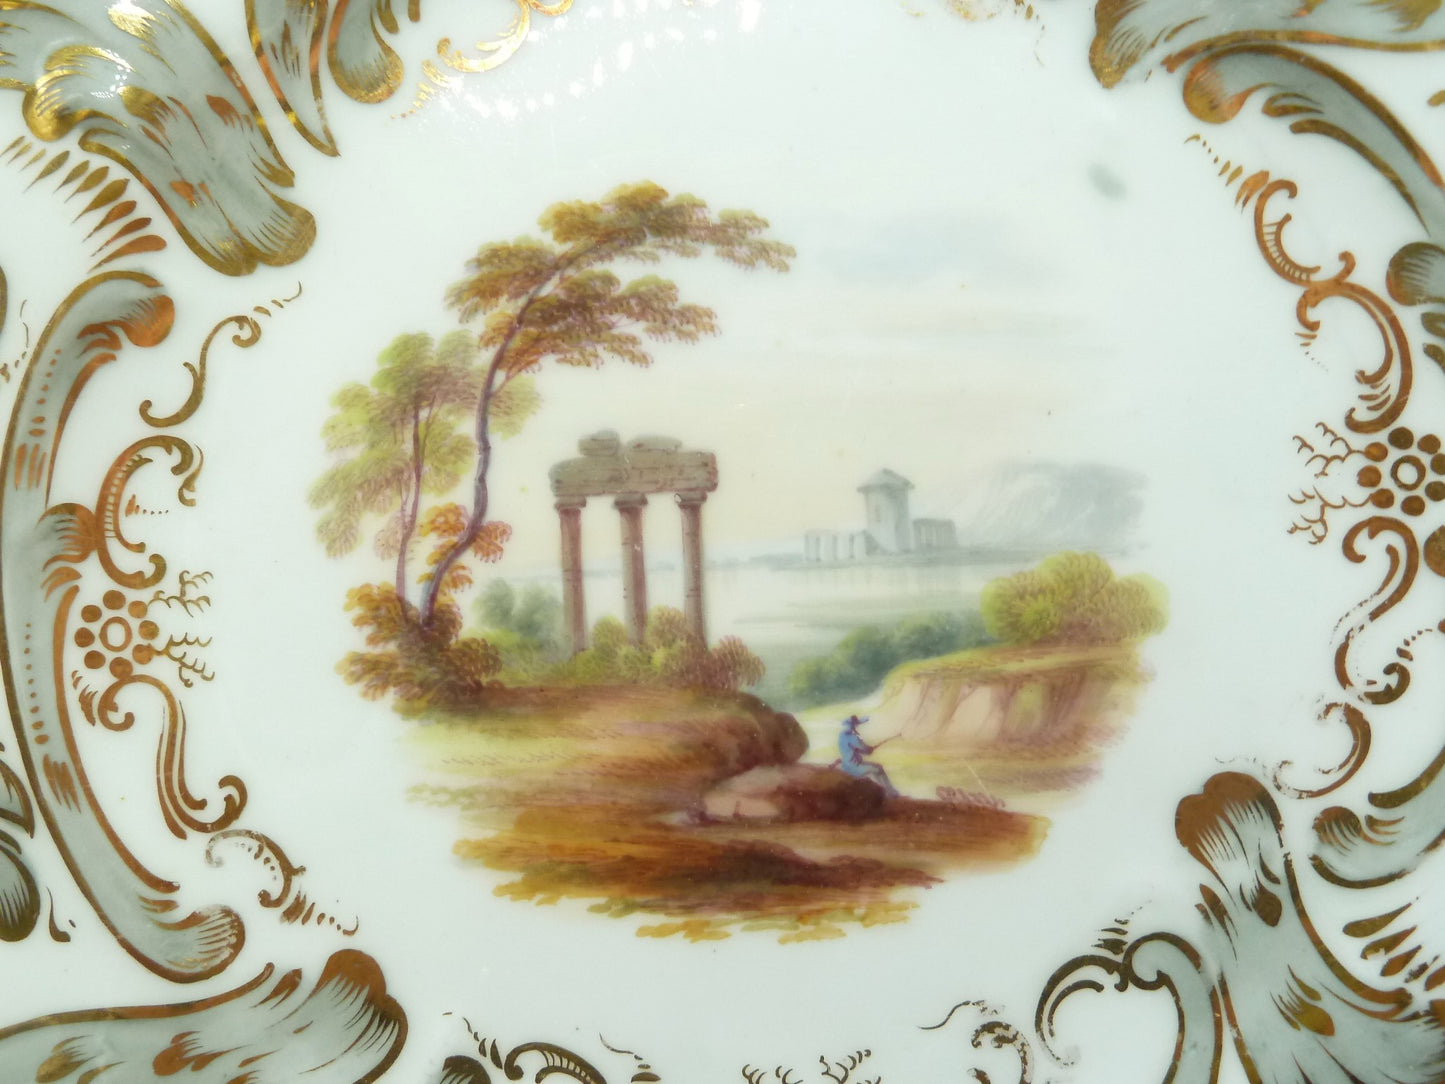 English landscape scenes, water, castles, garden elements - 43 Chesapeake Court Antiques 